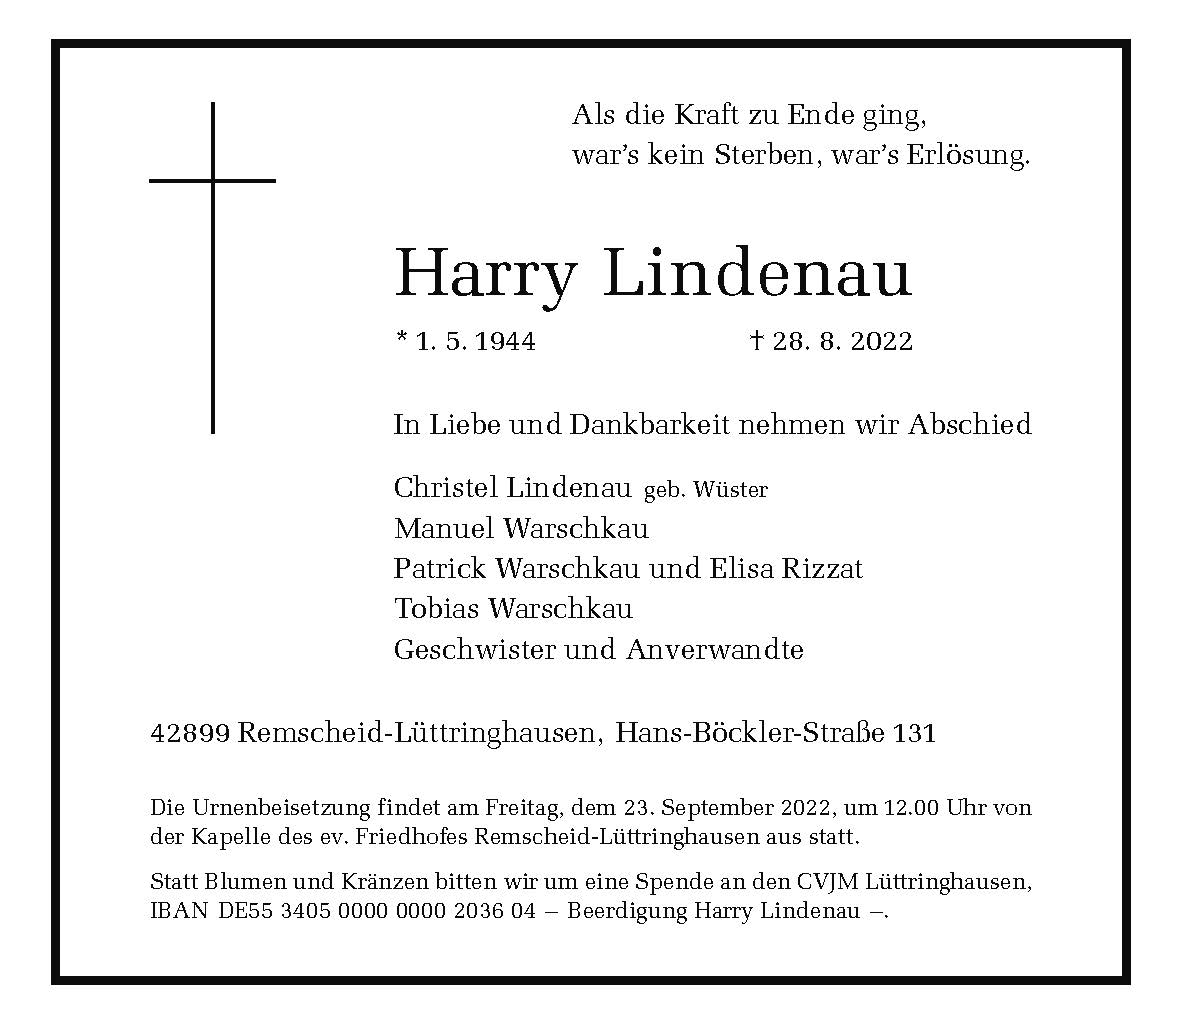 Harry Lindenau